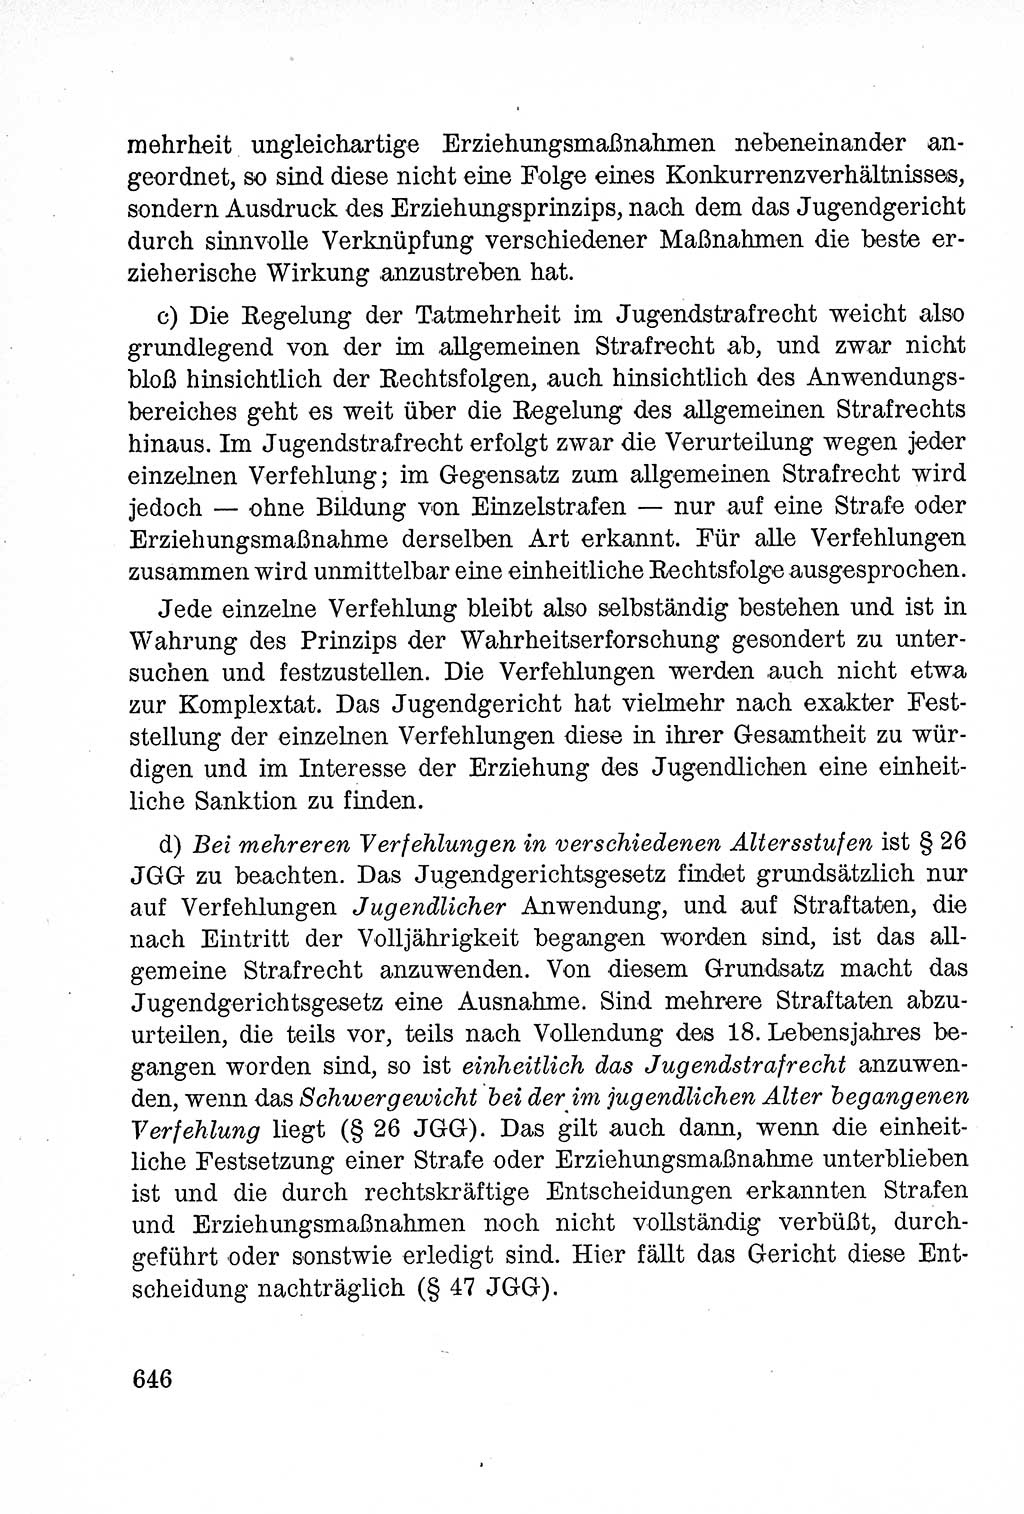 Lehrbuch des Strafrechts der Deutschen Demokratischen Republik (DDR), Allgemeiner Teil 1957, Seite 646 (Lb. Strafr. DDR AT 1957, S. 646)